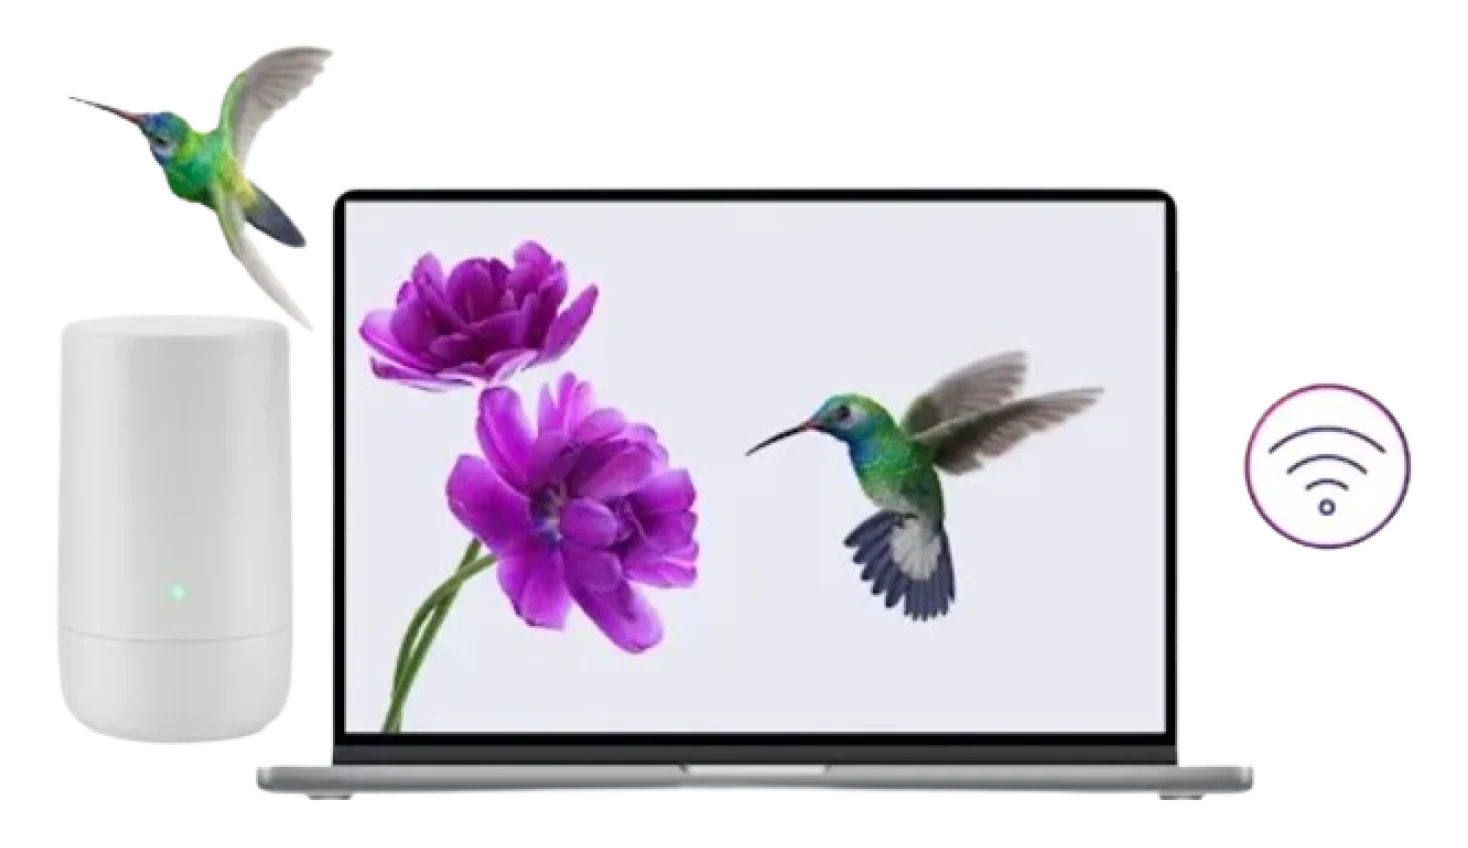 Un ordinateur portable affiche l’image d’un colibri et de fleurs violettes. L'ordinateur portable est entouré d'un modem TELUS, d'un colibri volant et d'un symbole Wi-Fi.